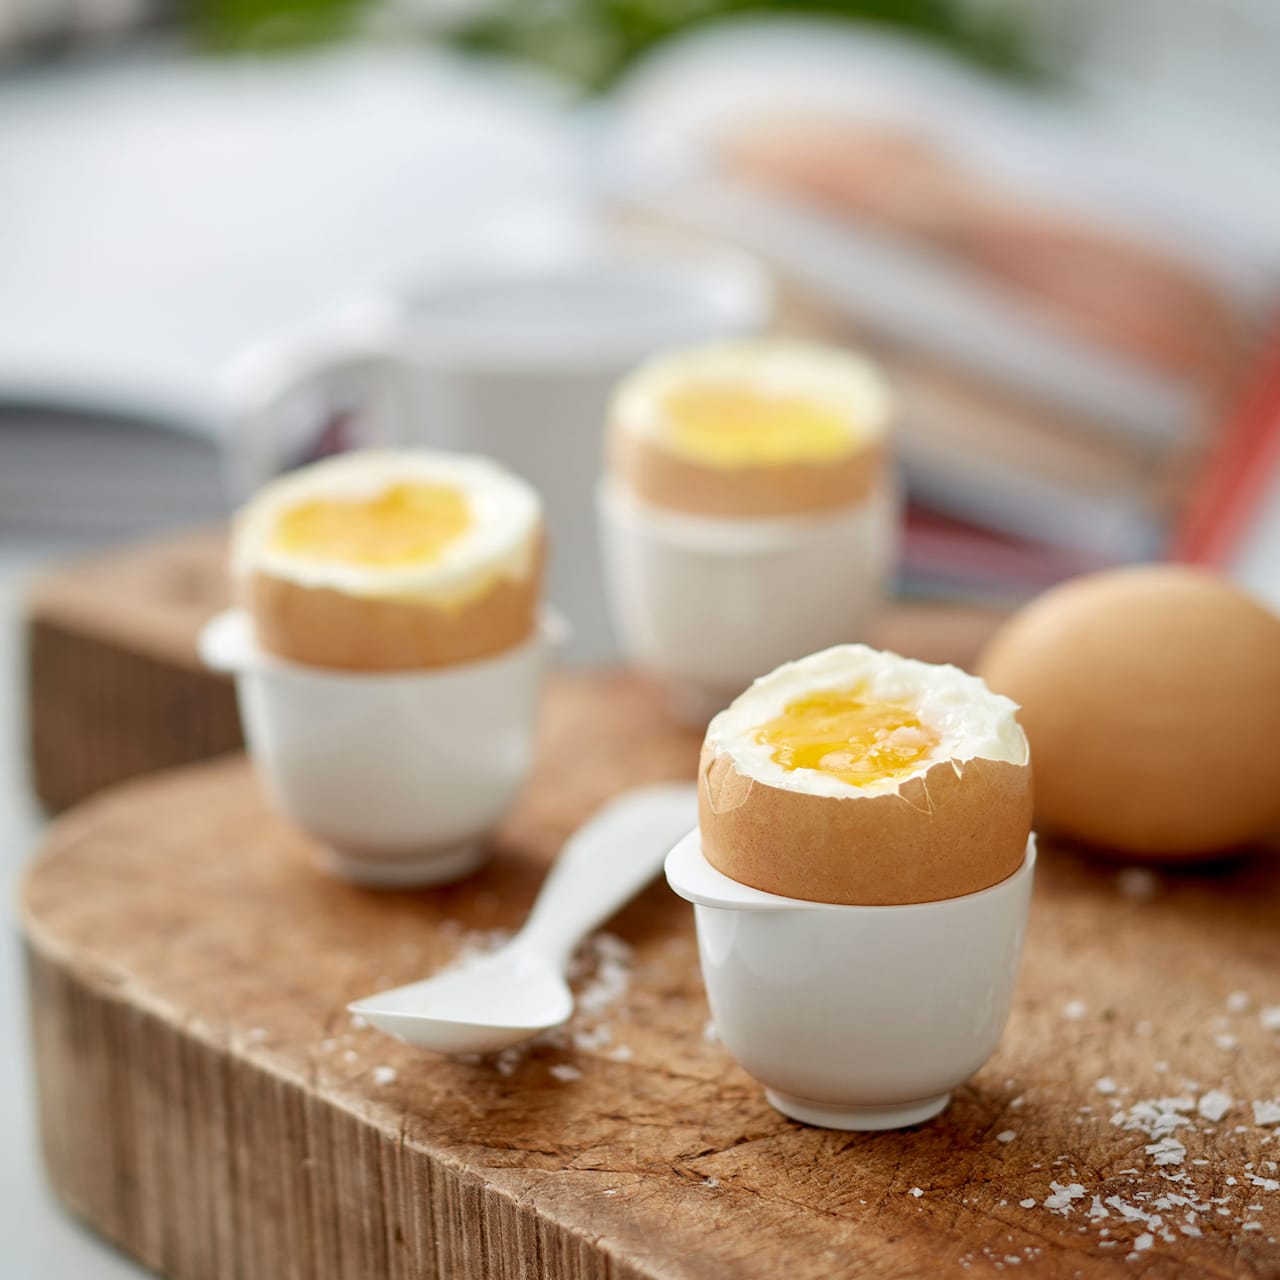 Margrethe Egg cup - White